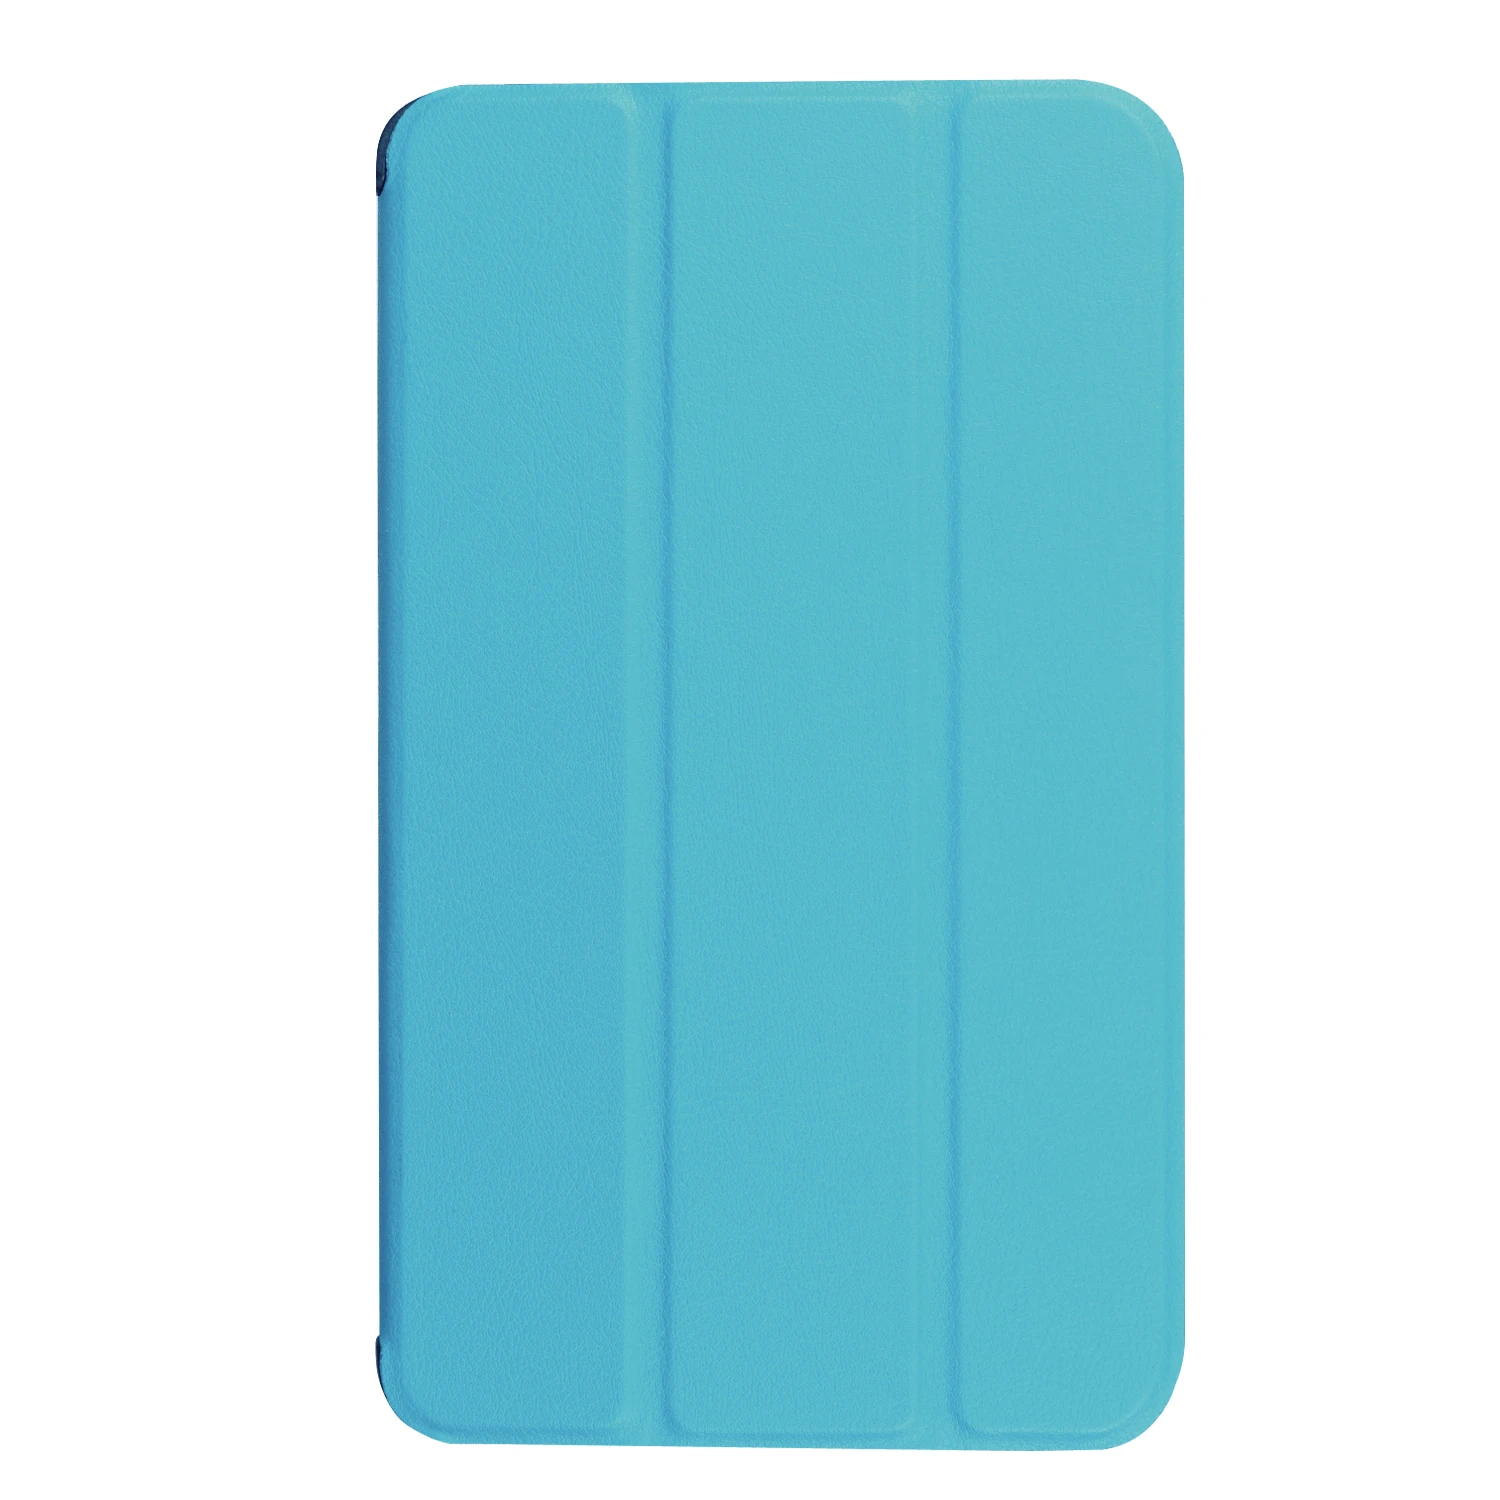 Кожаный чехол на магните с подставкой из искусственной кожи чехол для Samsung Galaxy Tab A 10,1 T580 T585 T580N T585N чехол+ Защитная пленка на экран+ стилус - Цвет: blue